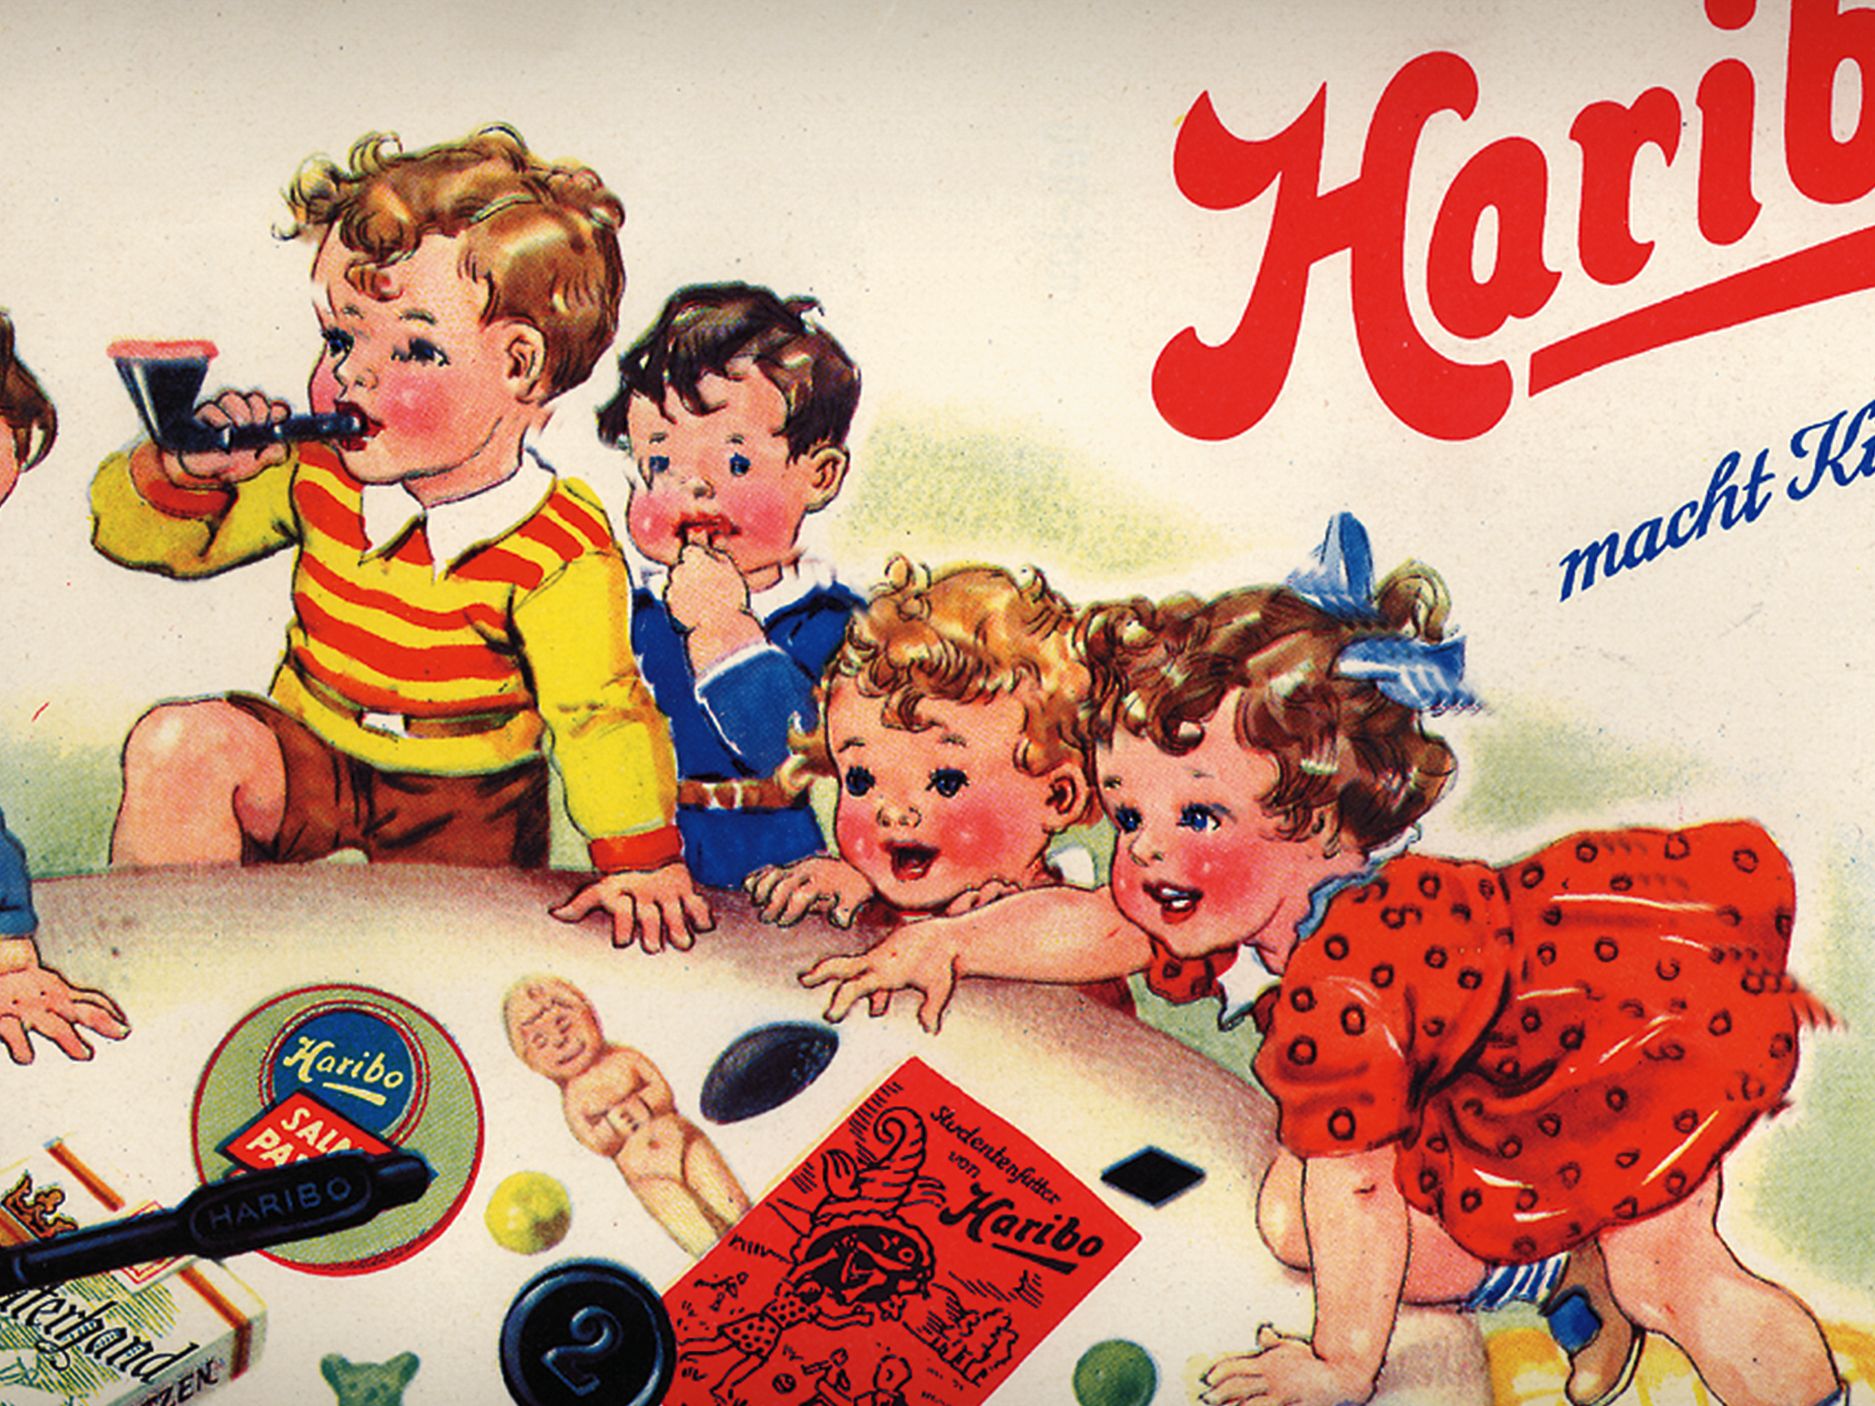 A HARIBO archív reklámja, gyerekek gumimacival és medvecukorral játszanak